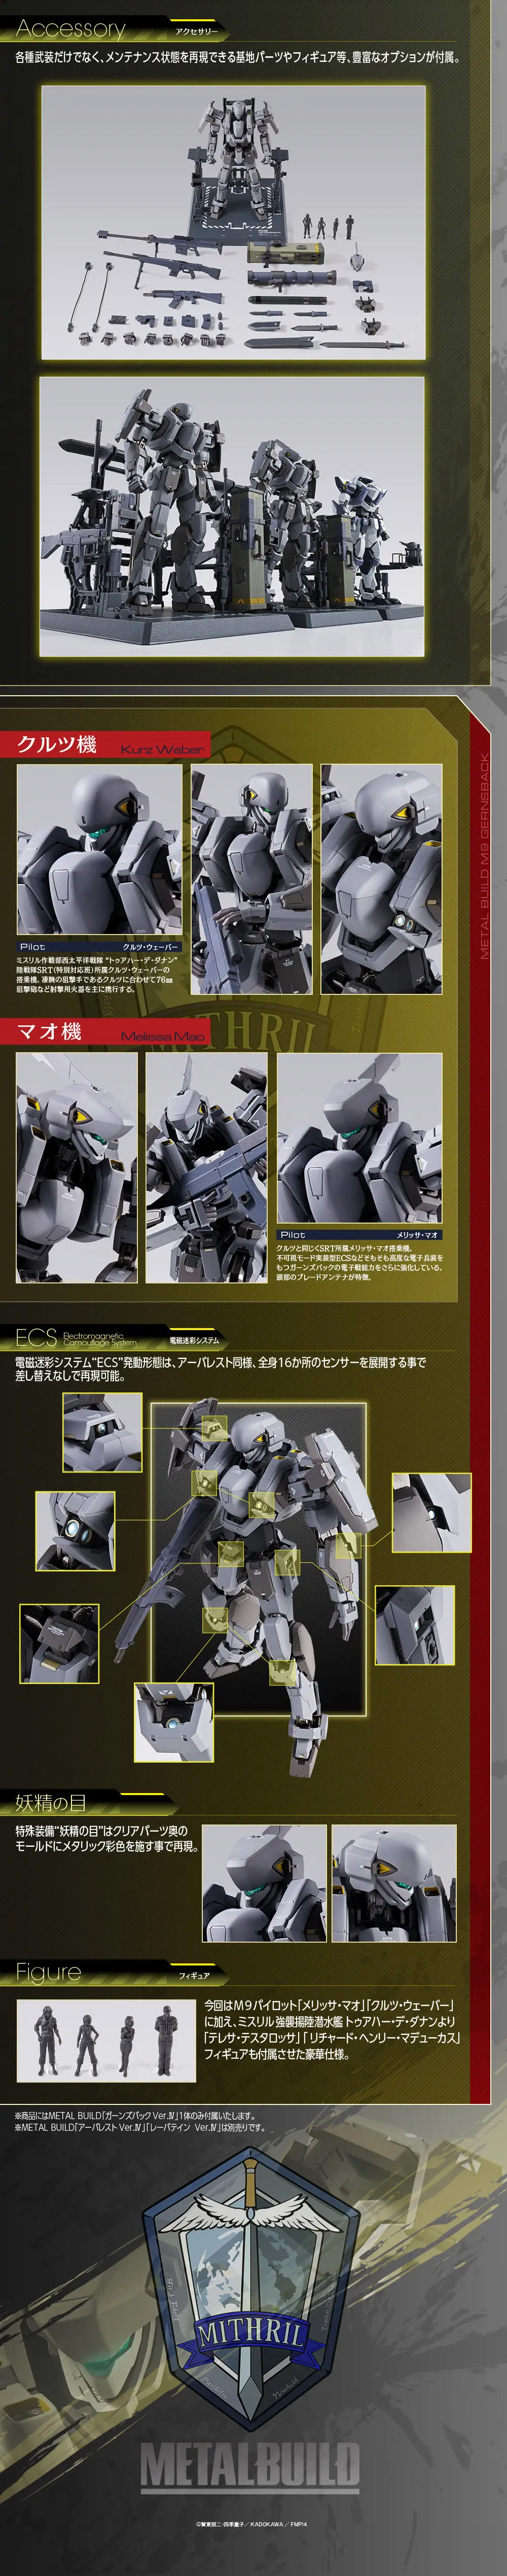 Anime Figura De Accion De Gundam Modelo De Metal Construir Gernsback Ver Iv Buy Una Pieza Modelo De Juguete Figuras De Anime Hacer Figuras De Accion Product On Alibaba Com